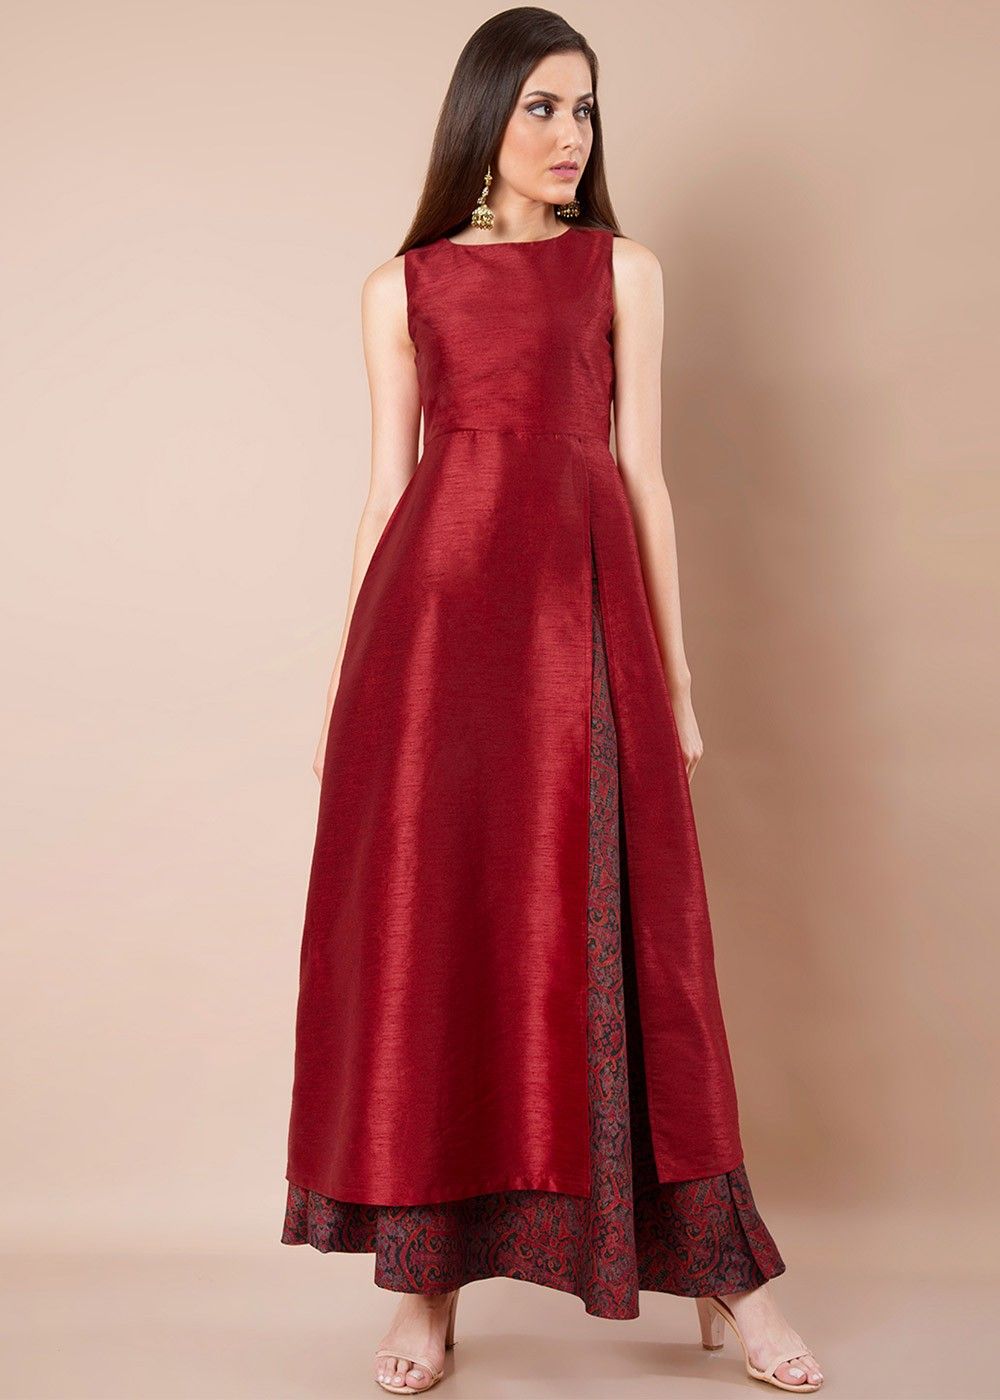 Details 76+ dupion silk gown latest